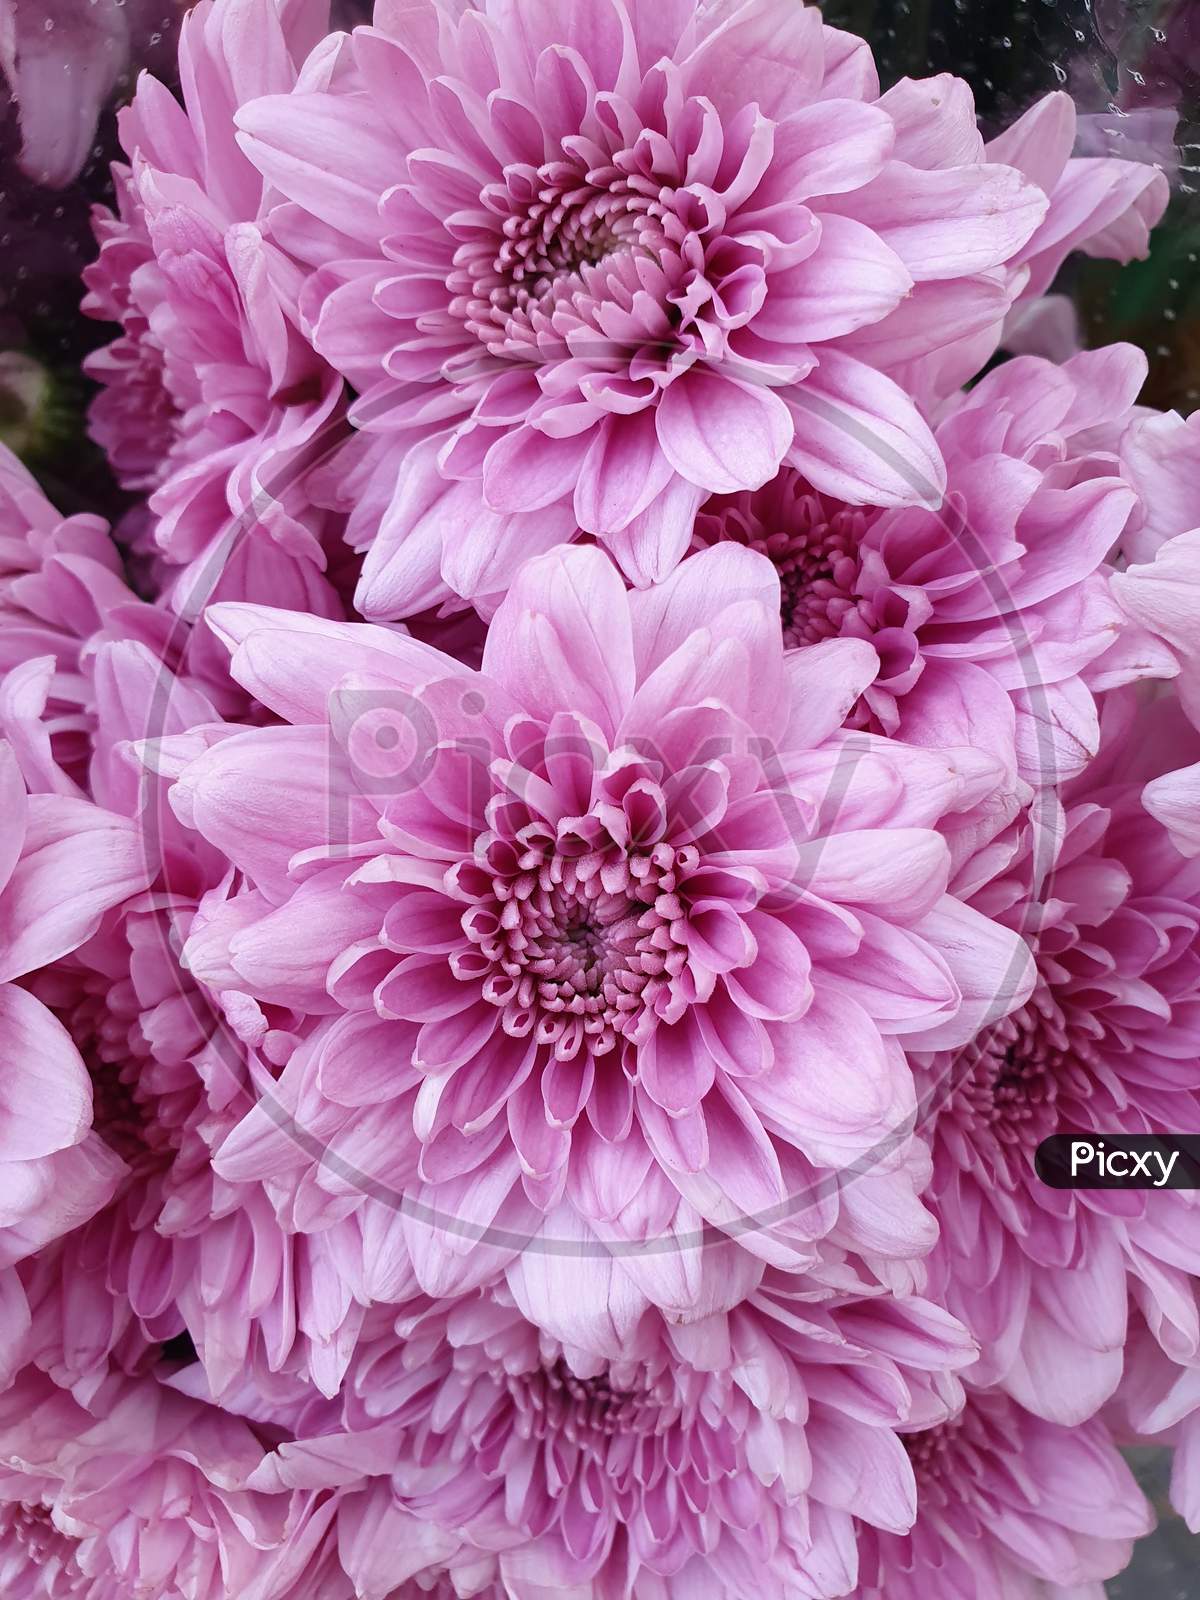 Pink Dahlia flower close-up.